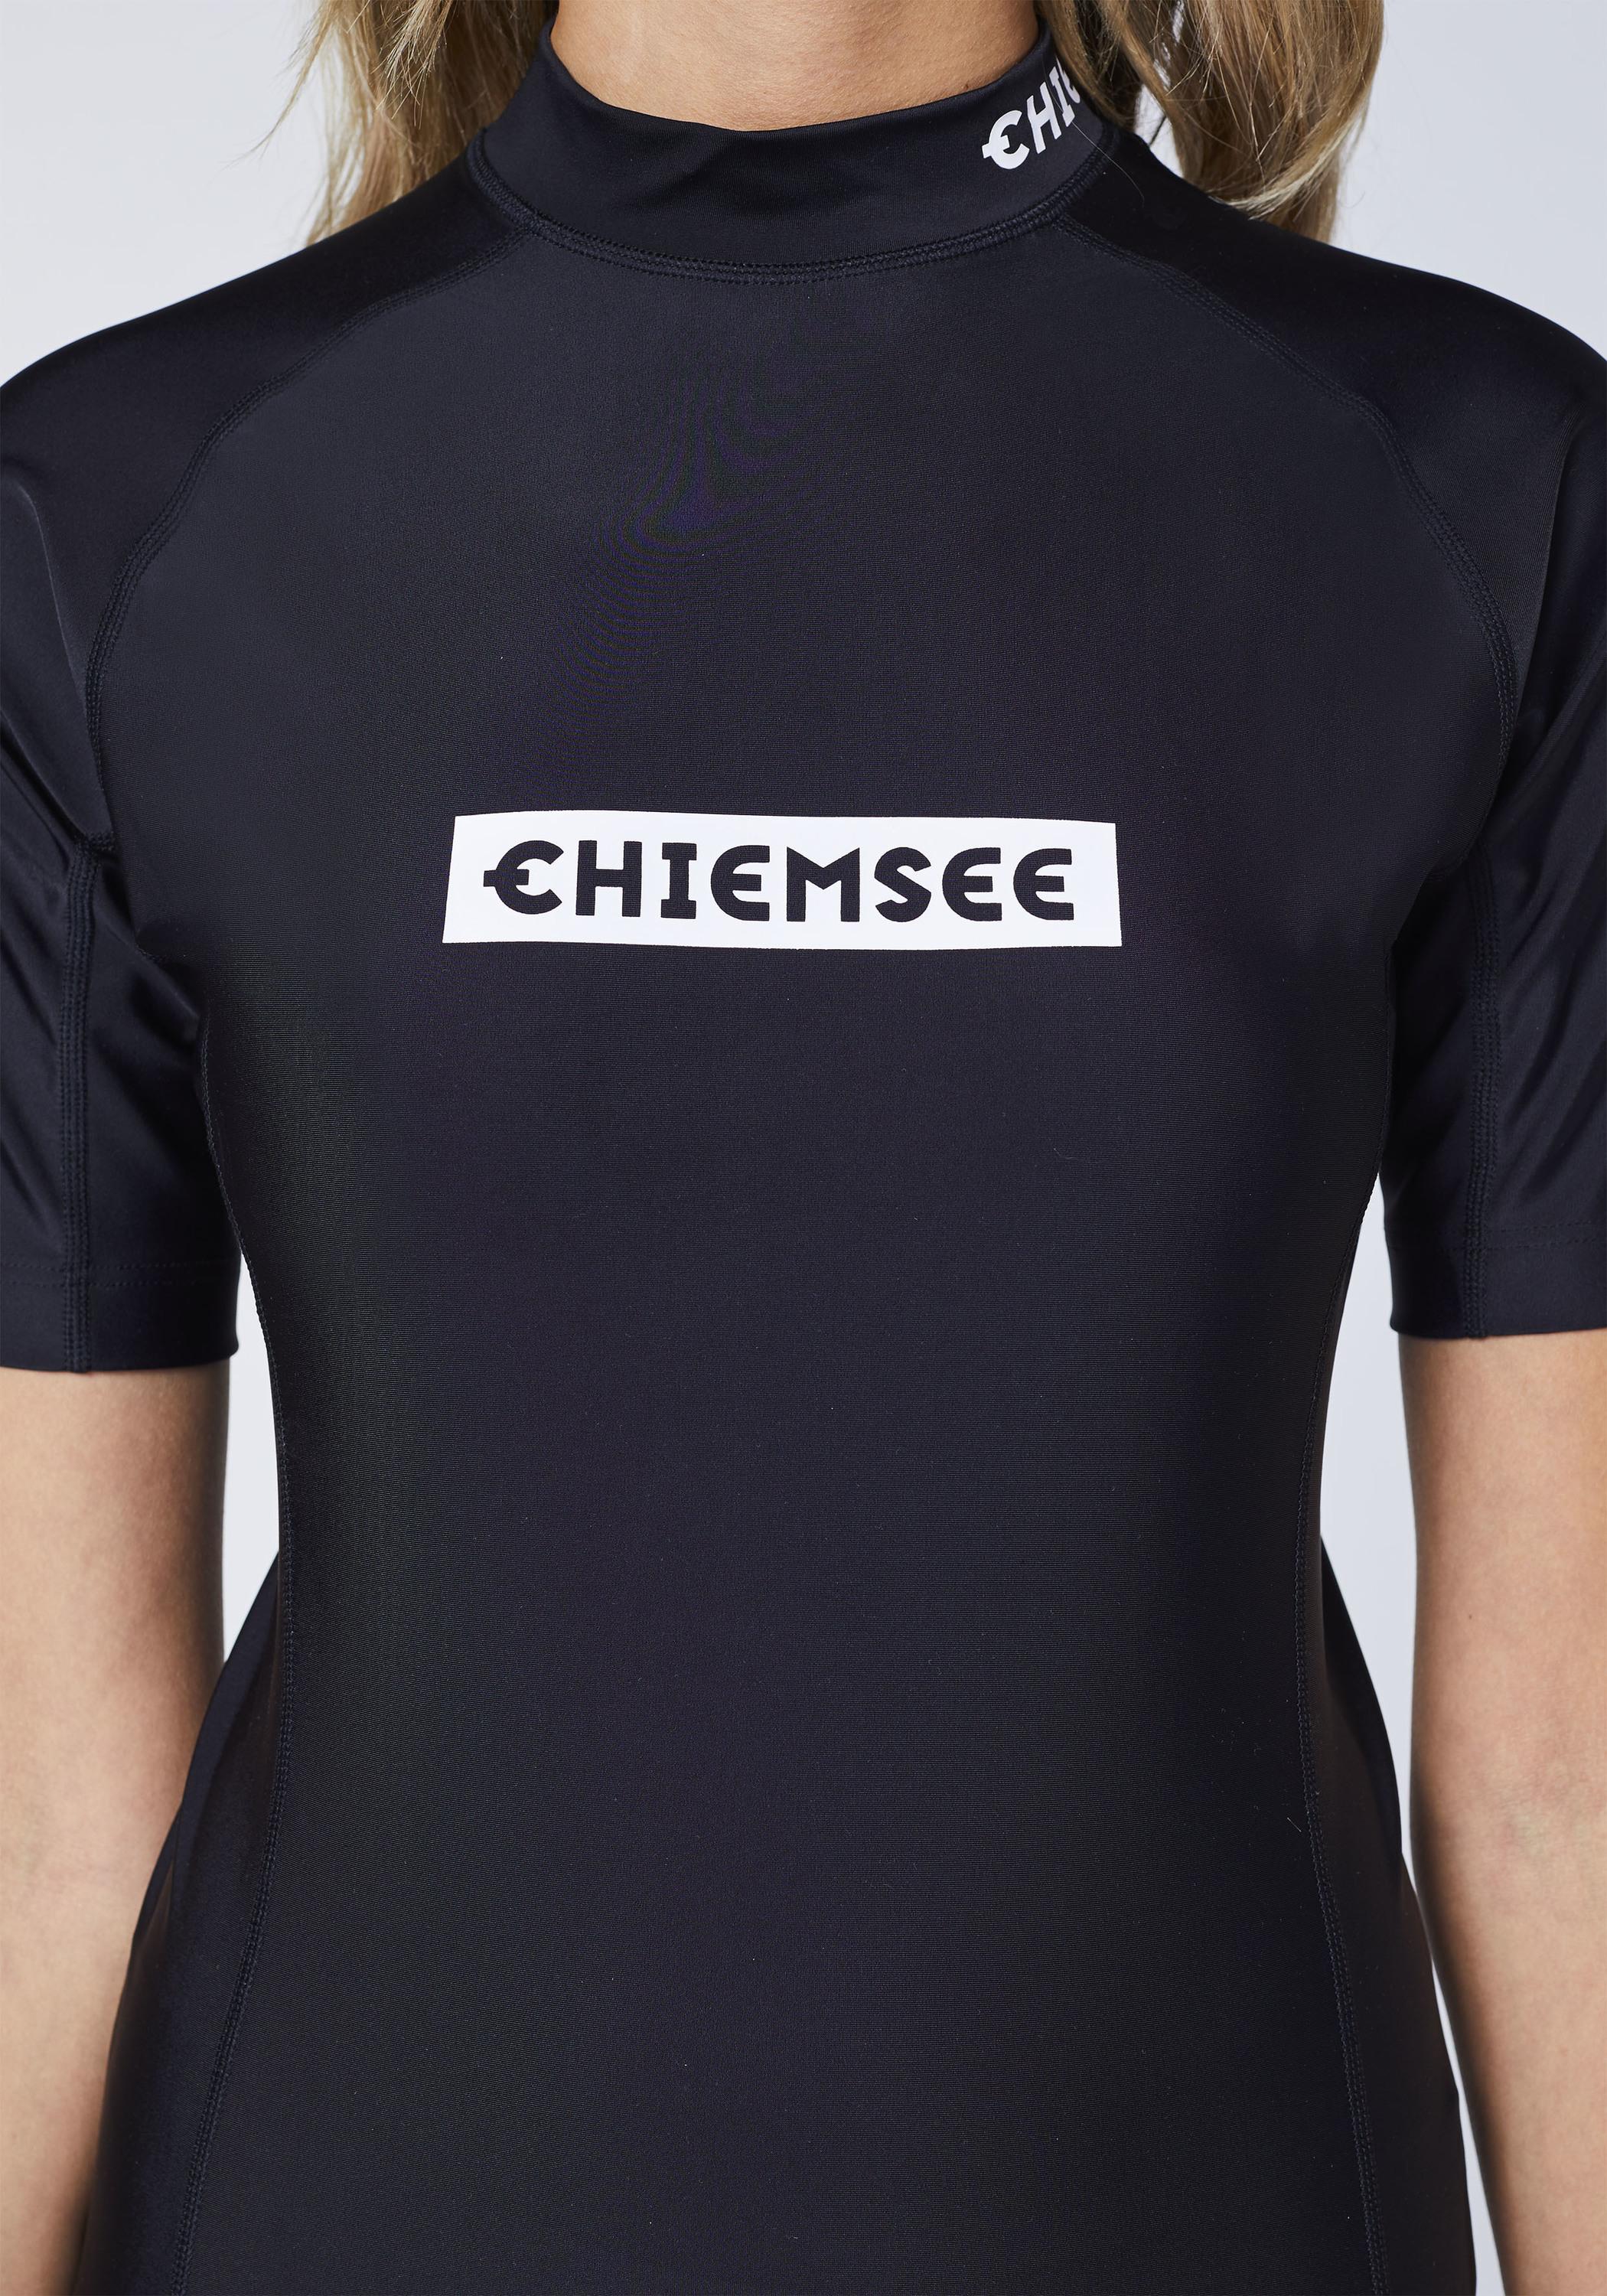 Chiemsee Badeshirt Surf SportScheck Black new kaufen Deep von Shirt Shop Online im